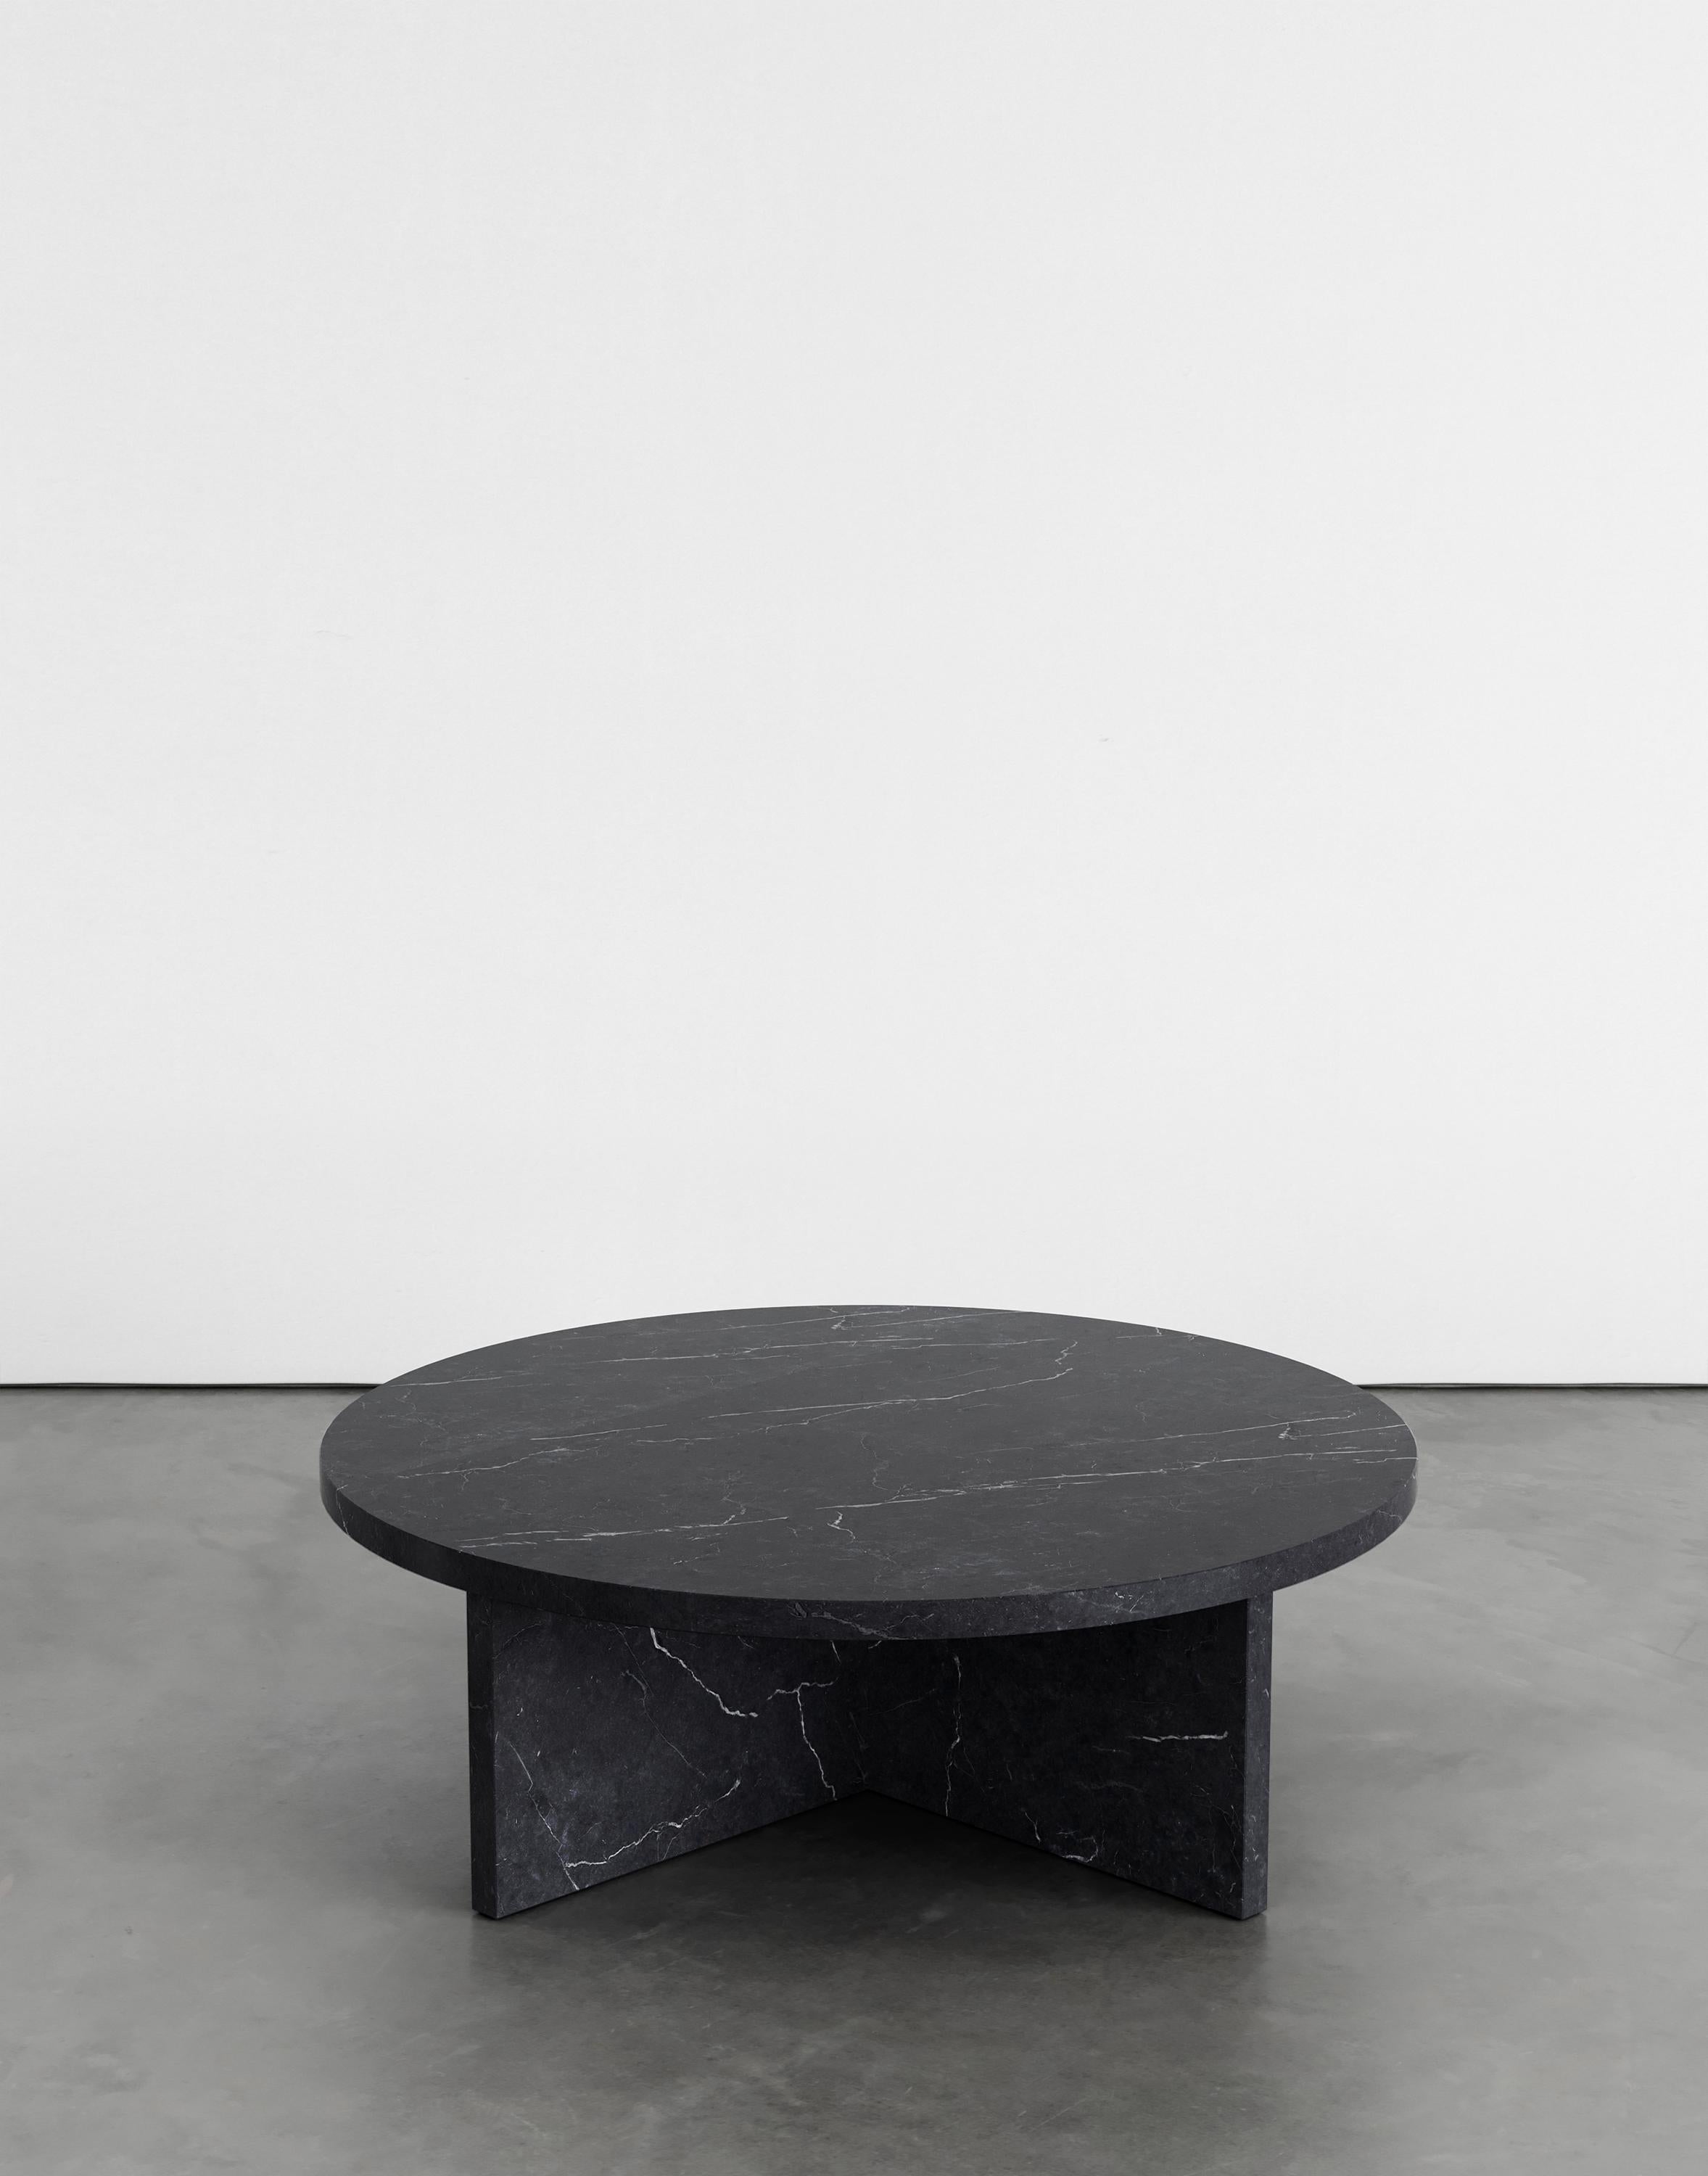 Table basse Rosa 90 par Agglomerati 
Dimensions : L 90 x H 30 cm 
Matériaux : Marquina noir. Disponible dans d'autres pierres. 

Agglomerati est un studio basé à Londres qui crée des meubles en pierre distinctifs. Fondé en 2019 par le designer